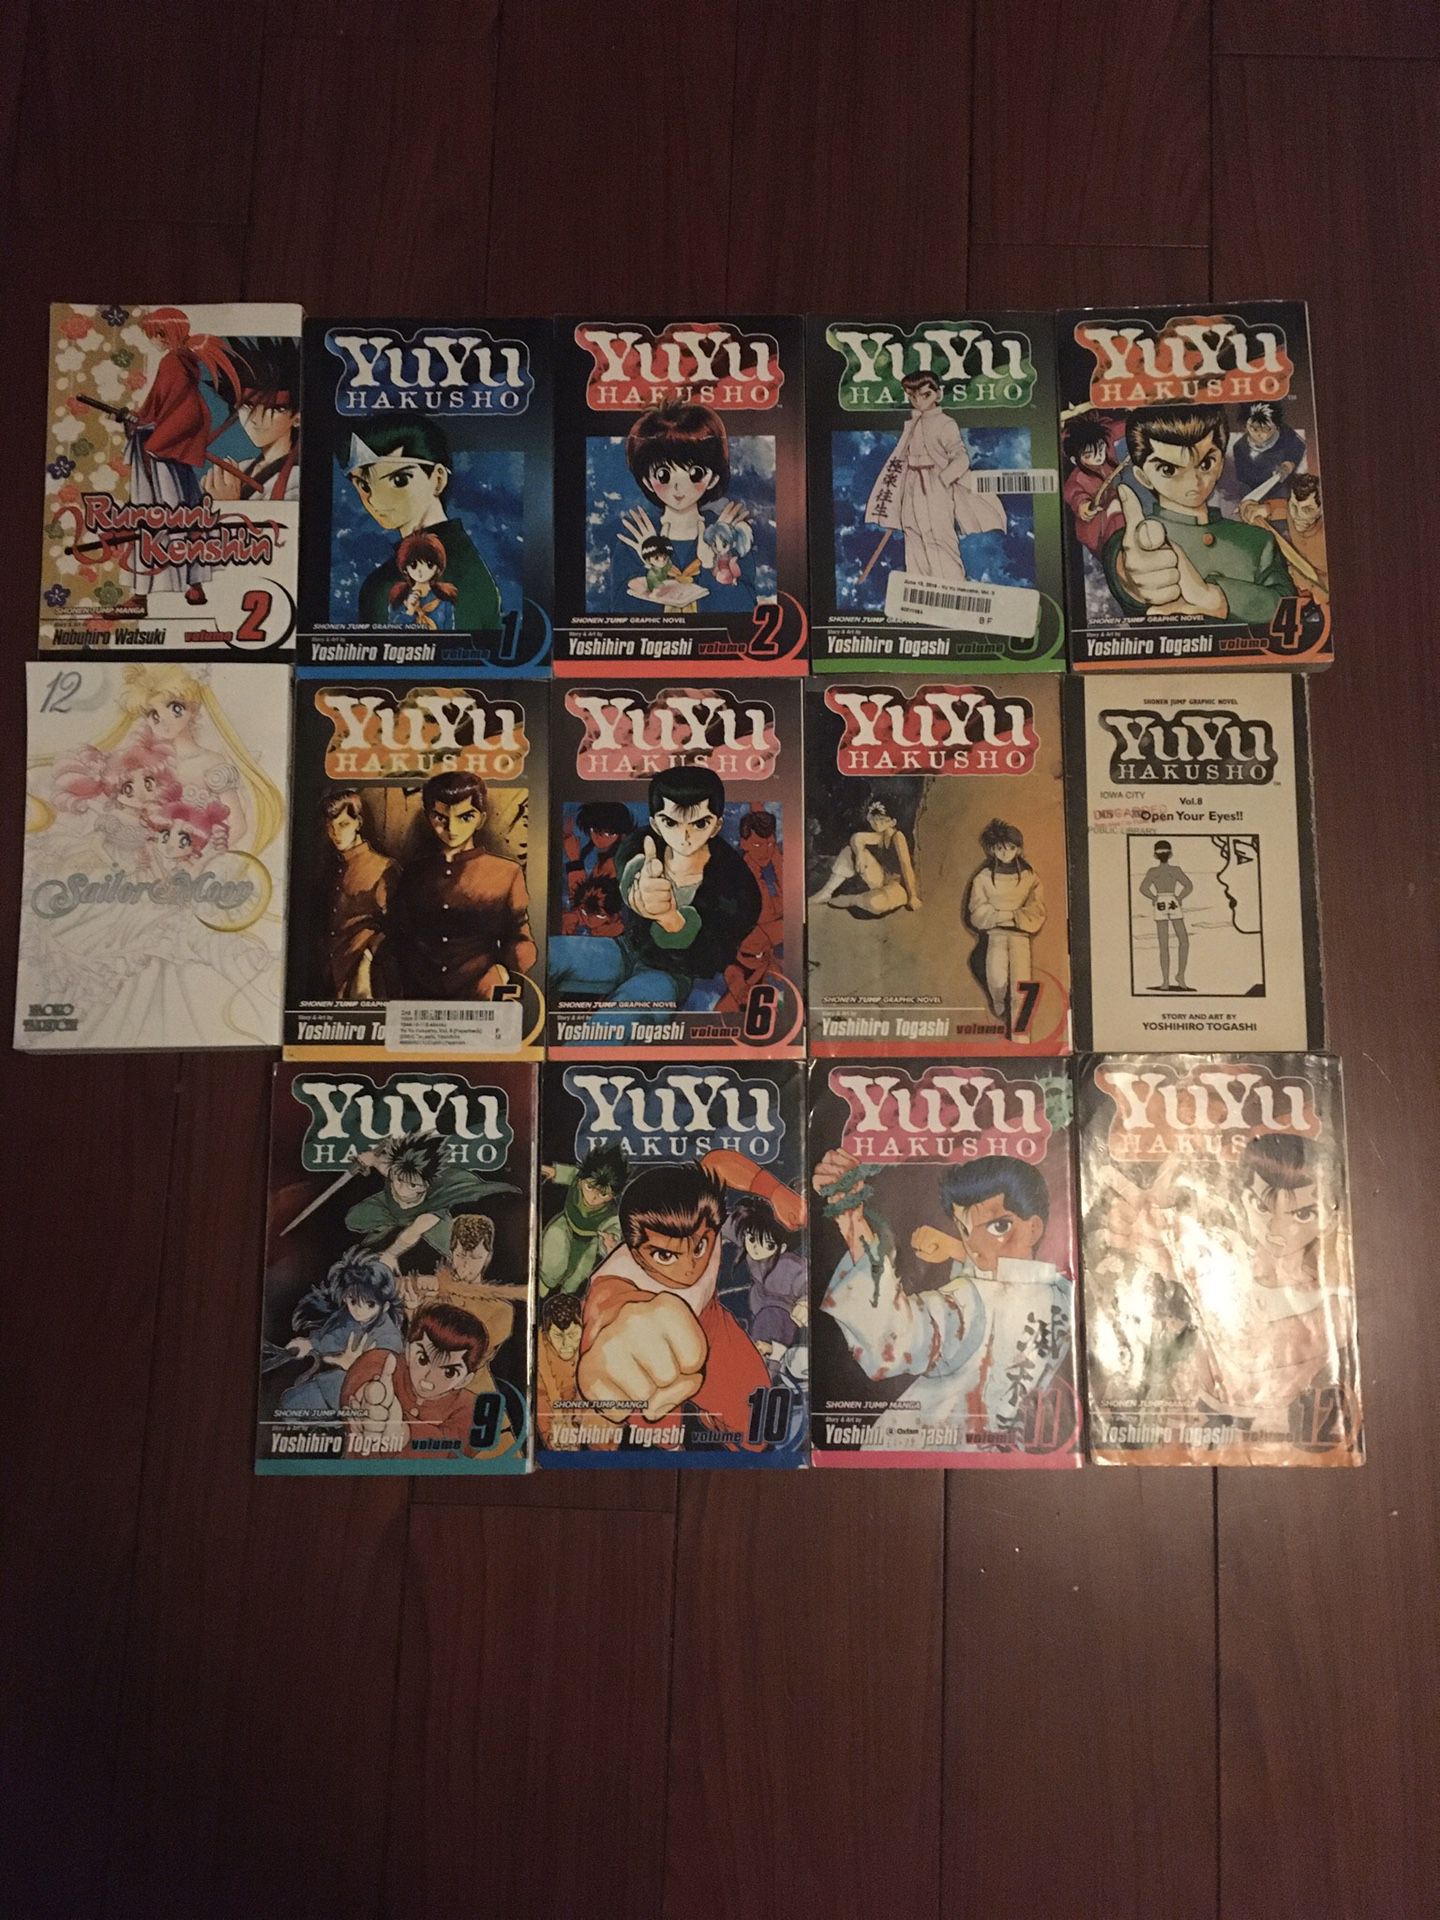 Yuyu Hakusho volume 1-12, Sailor moon, Ruroni Kenshin Anime/Manga